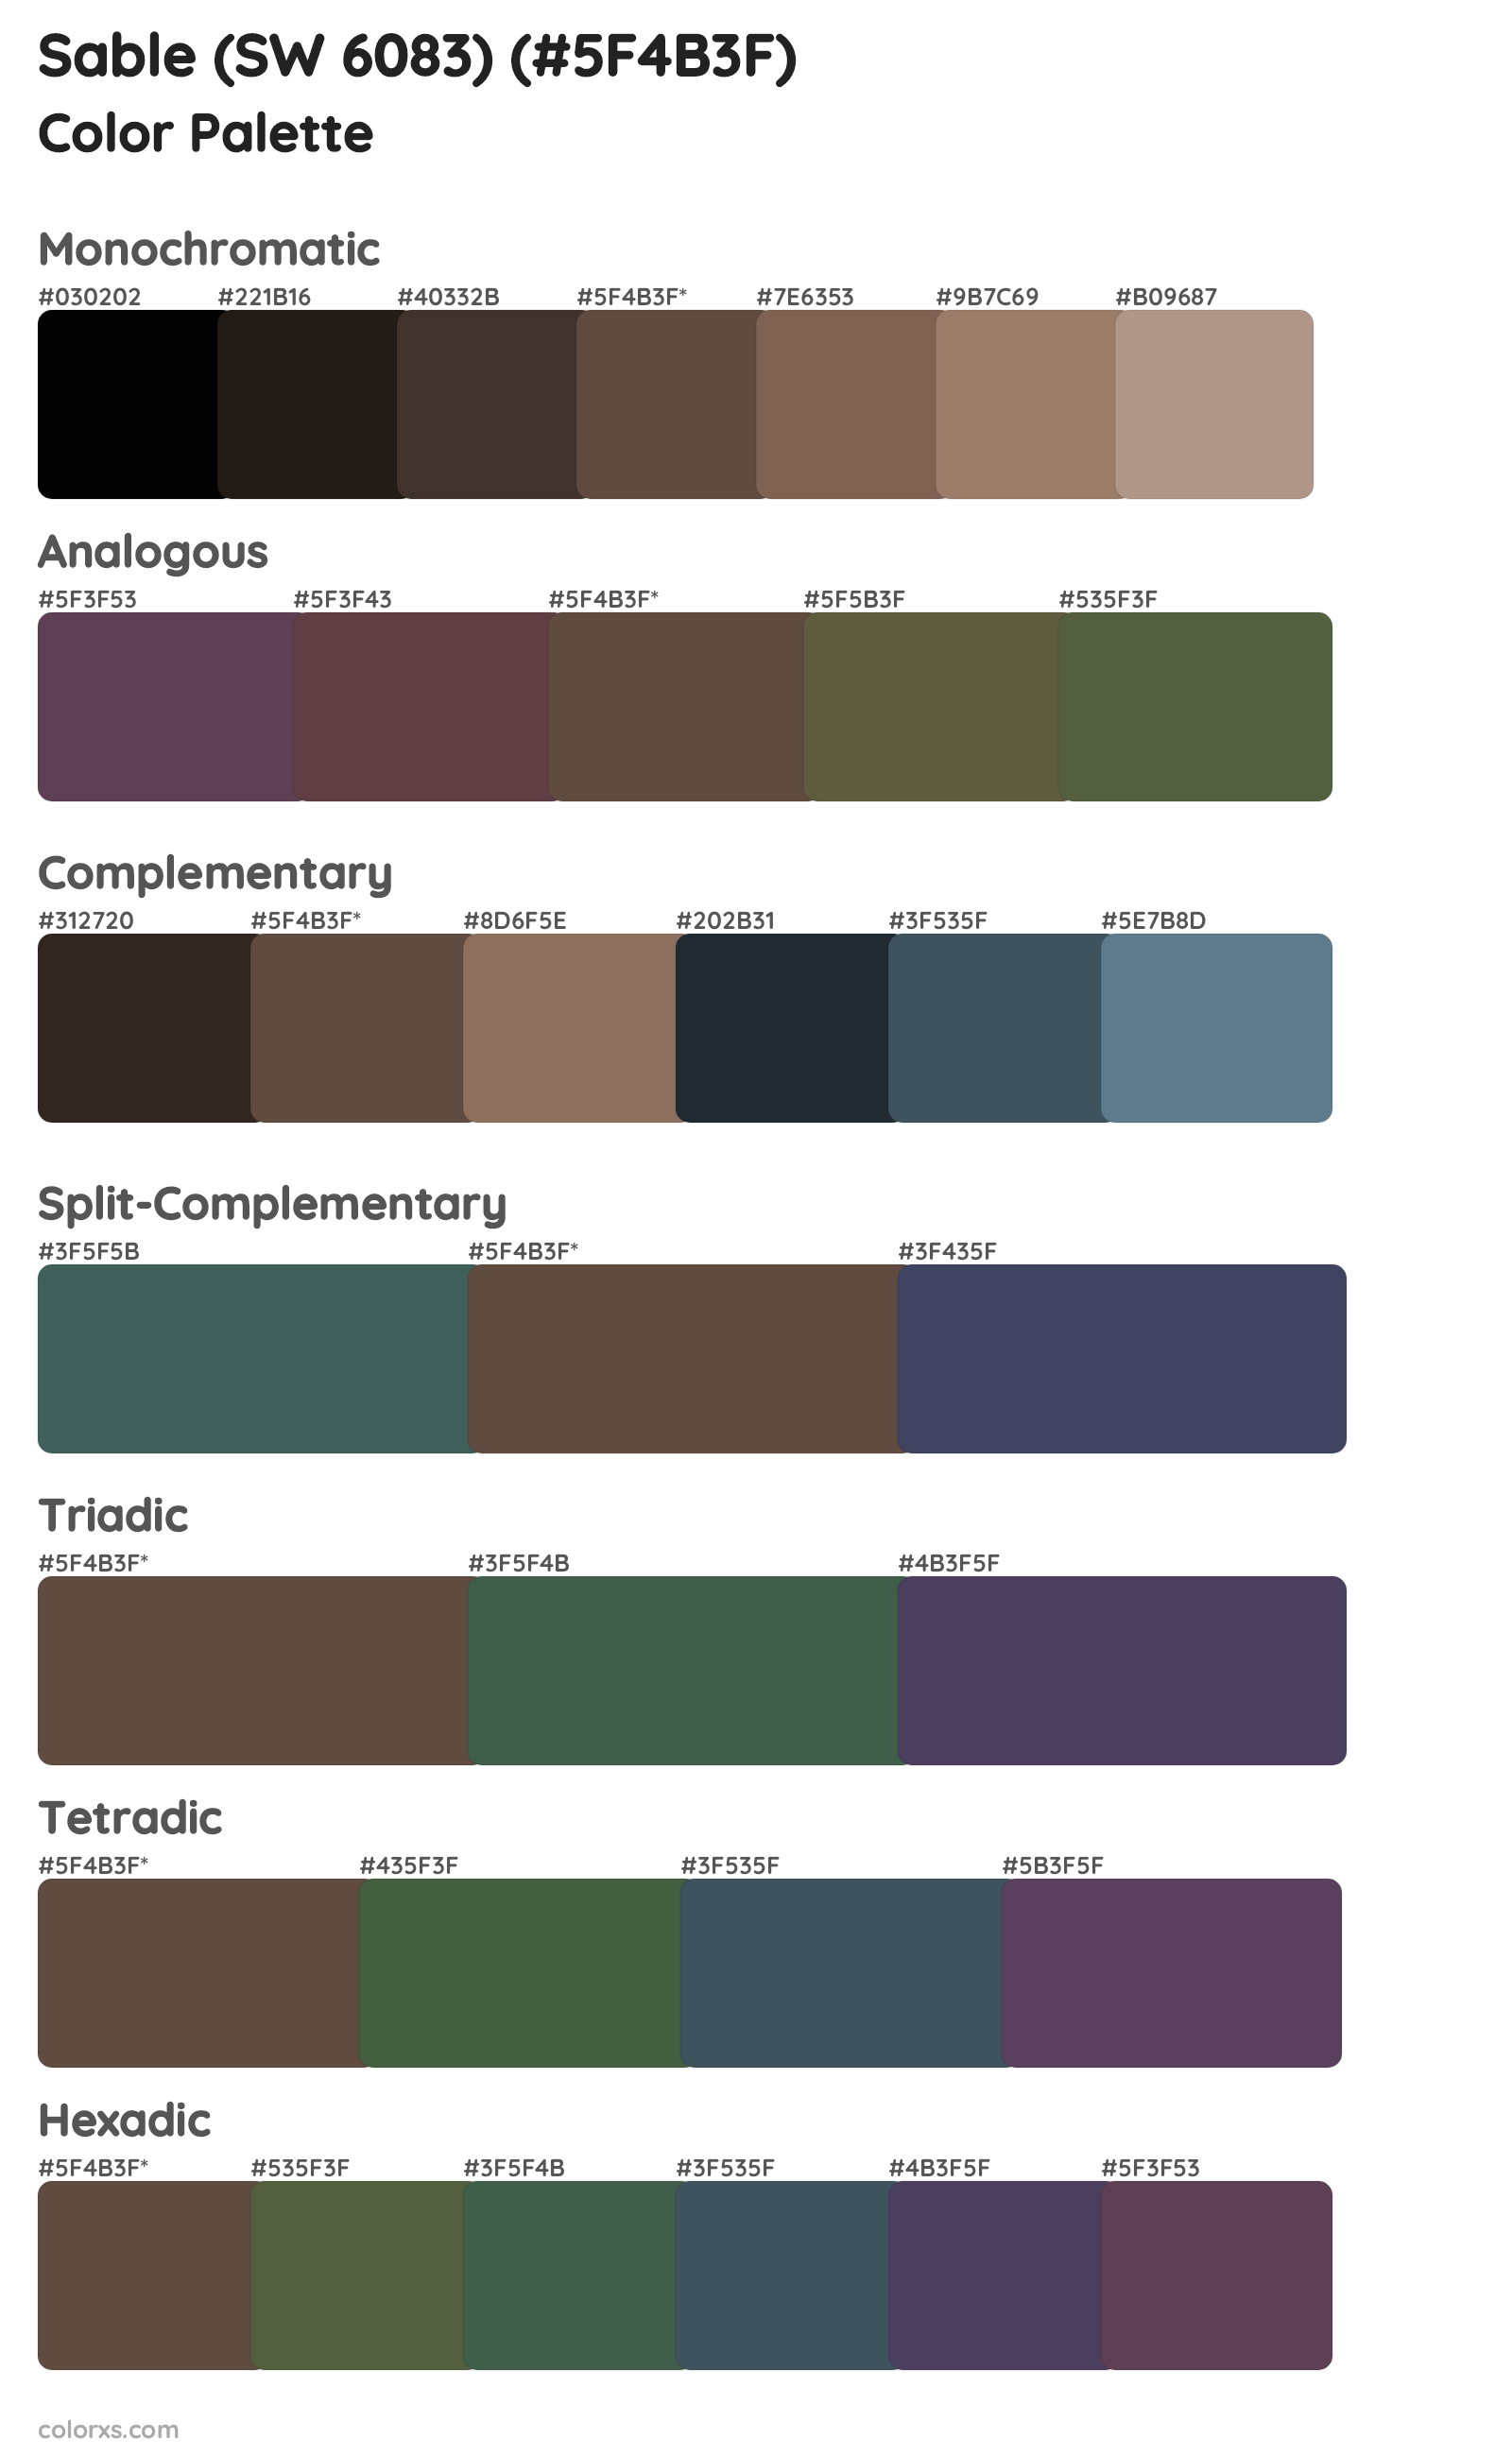 Sable (SW 6083) Color Scheme Palettes